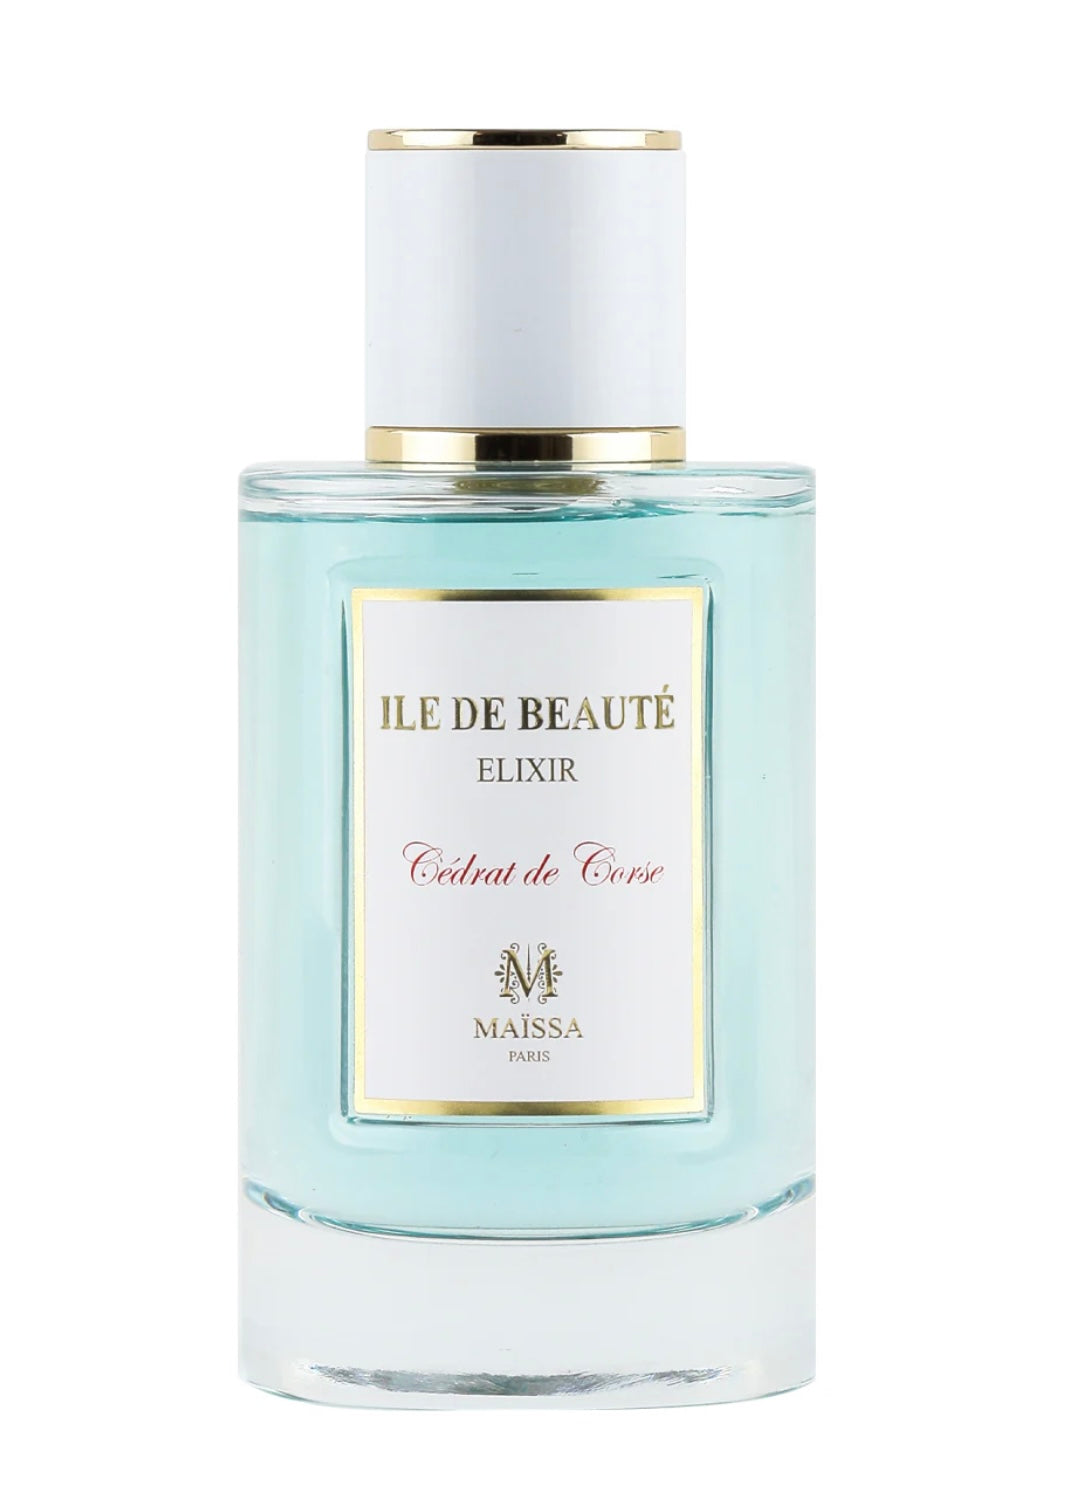 Maissa Paris Ile de Beaute luxury fragrance